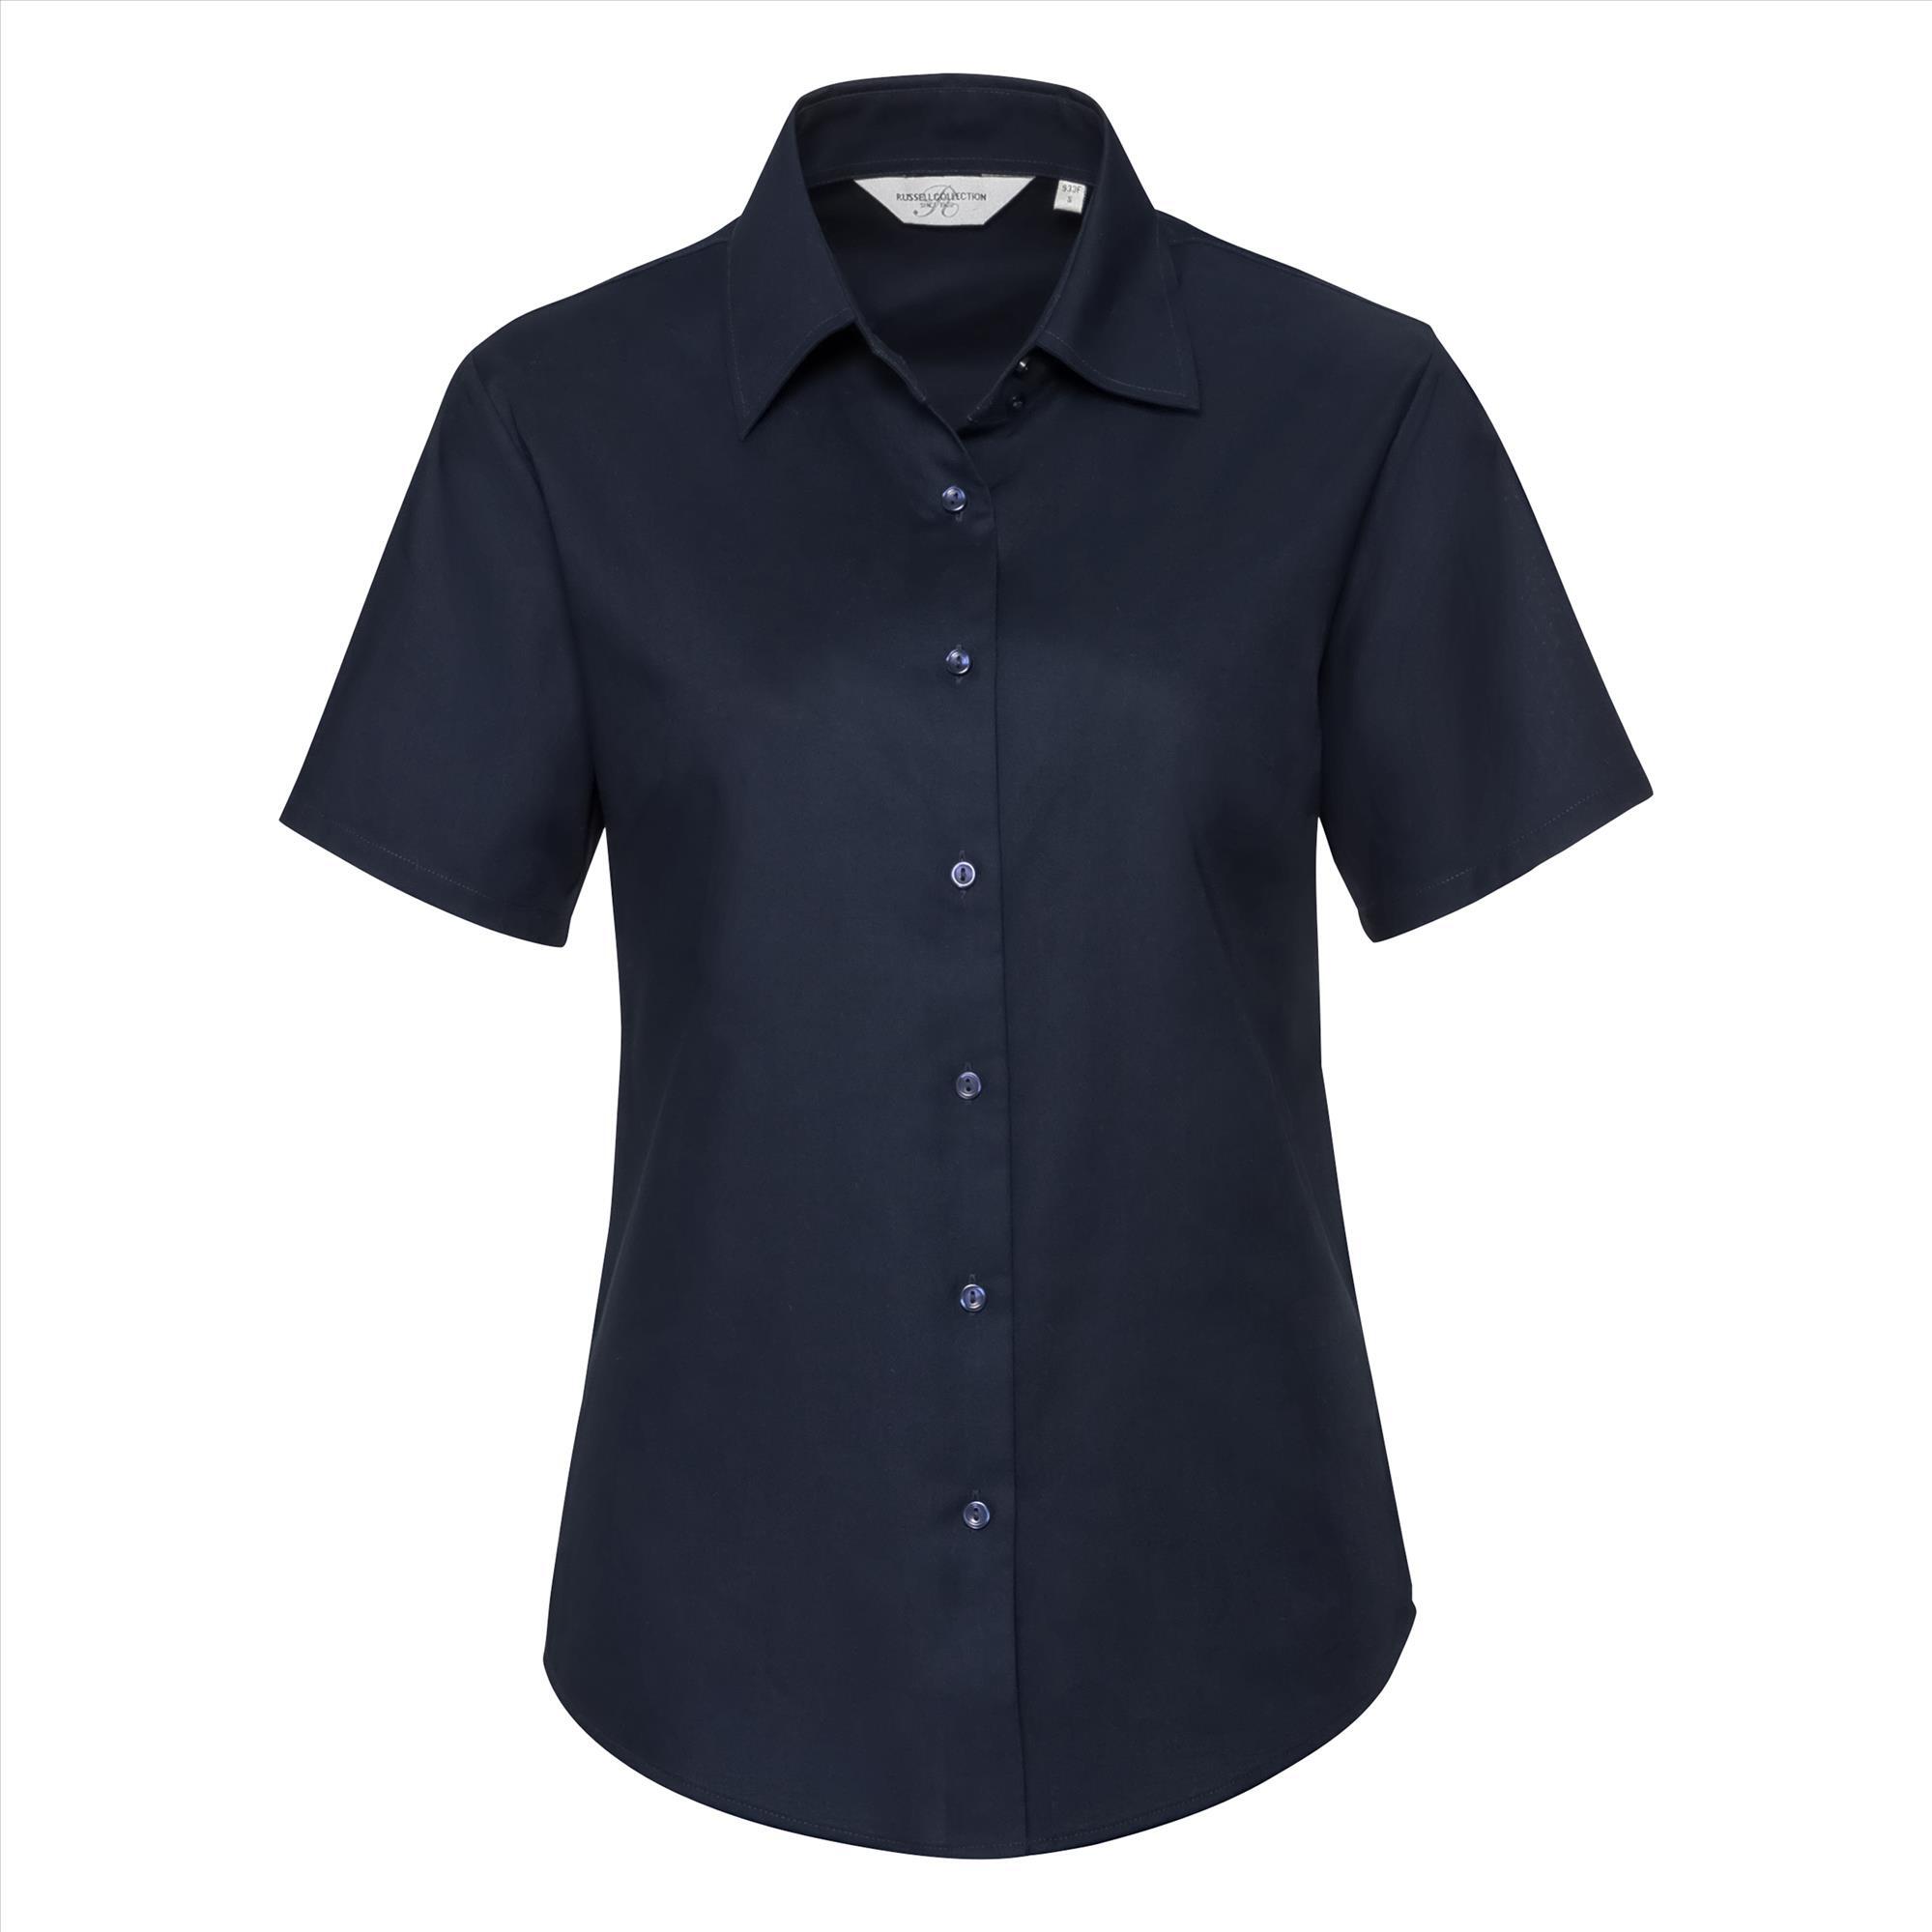 Getailleerde dames blouse bright navy te personaliseren met en bedrijfslogo